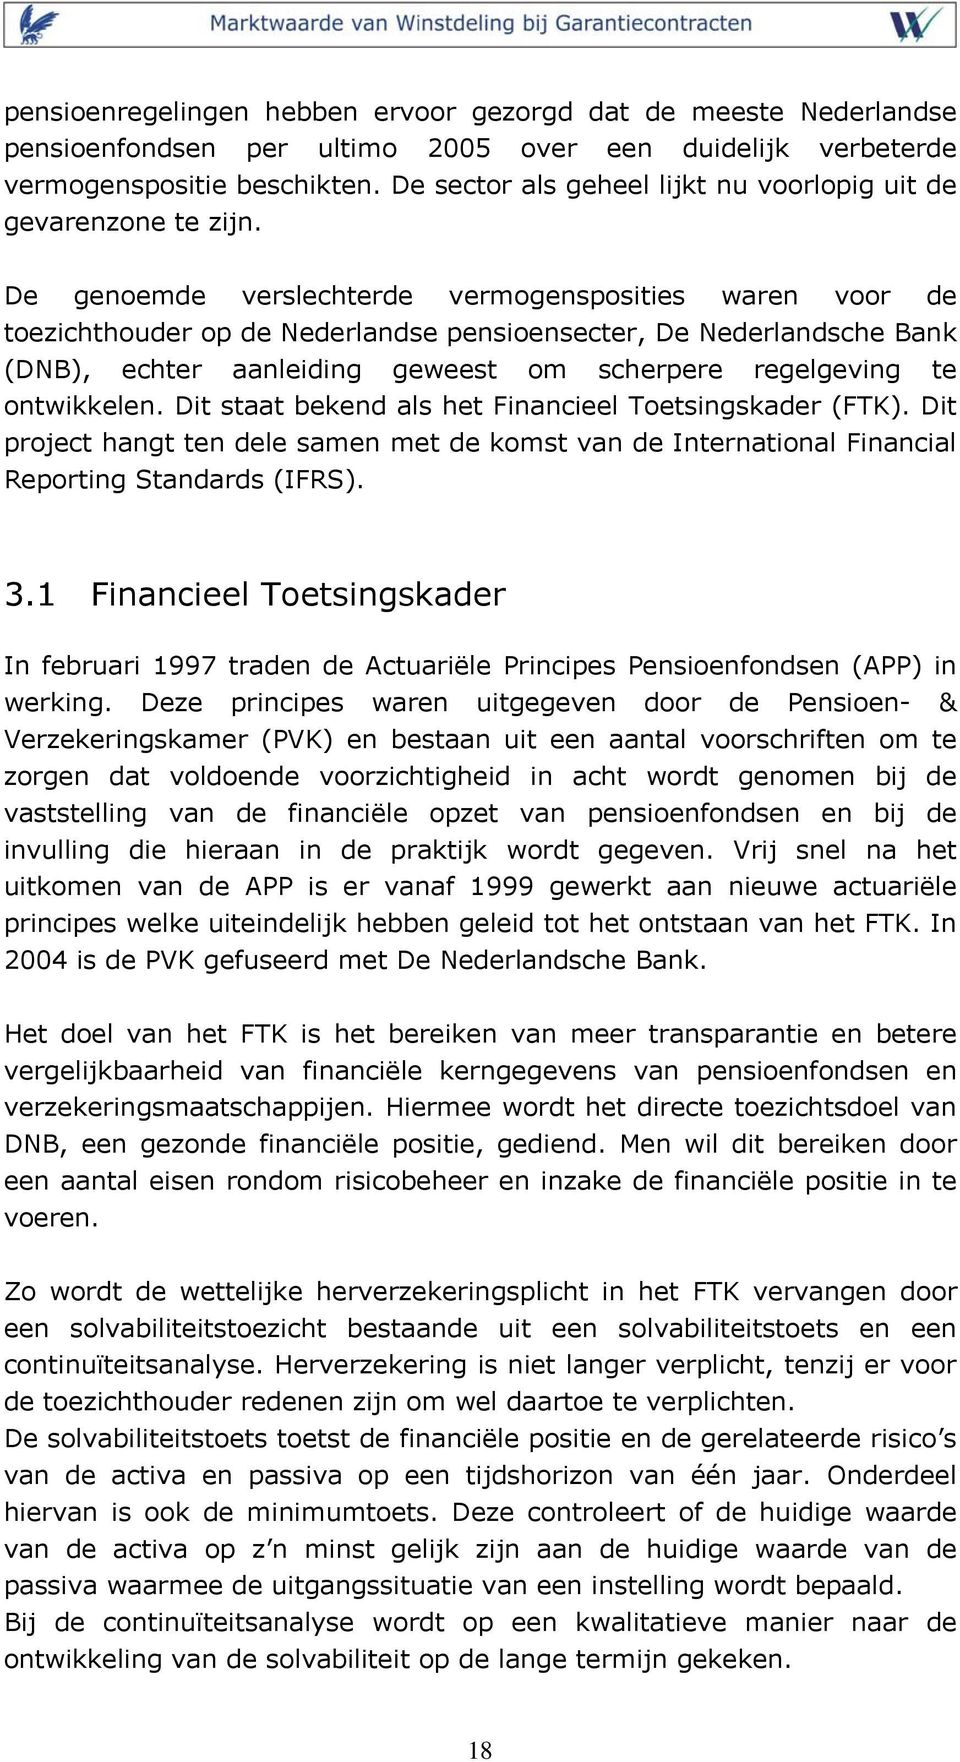 De genoemde verslechterde vermogensposities waren voor de toezichthouder op de Nederlandse pensioensecter, De Nederlandsche Bank (DNB), echter aanleiding geweest om scherpere regelgeving te